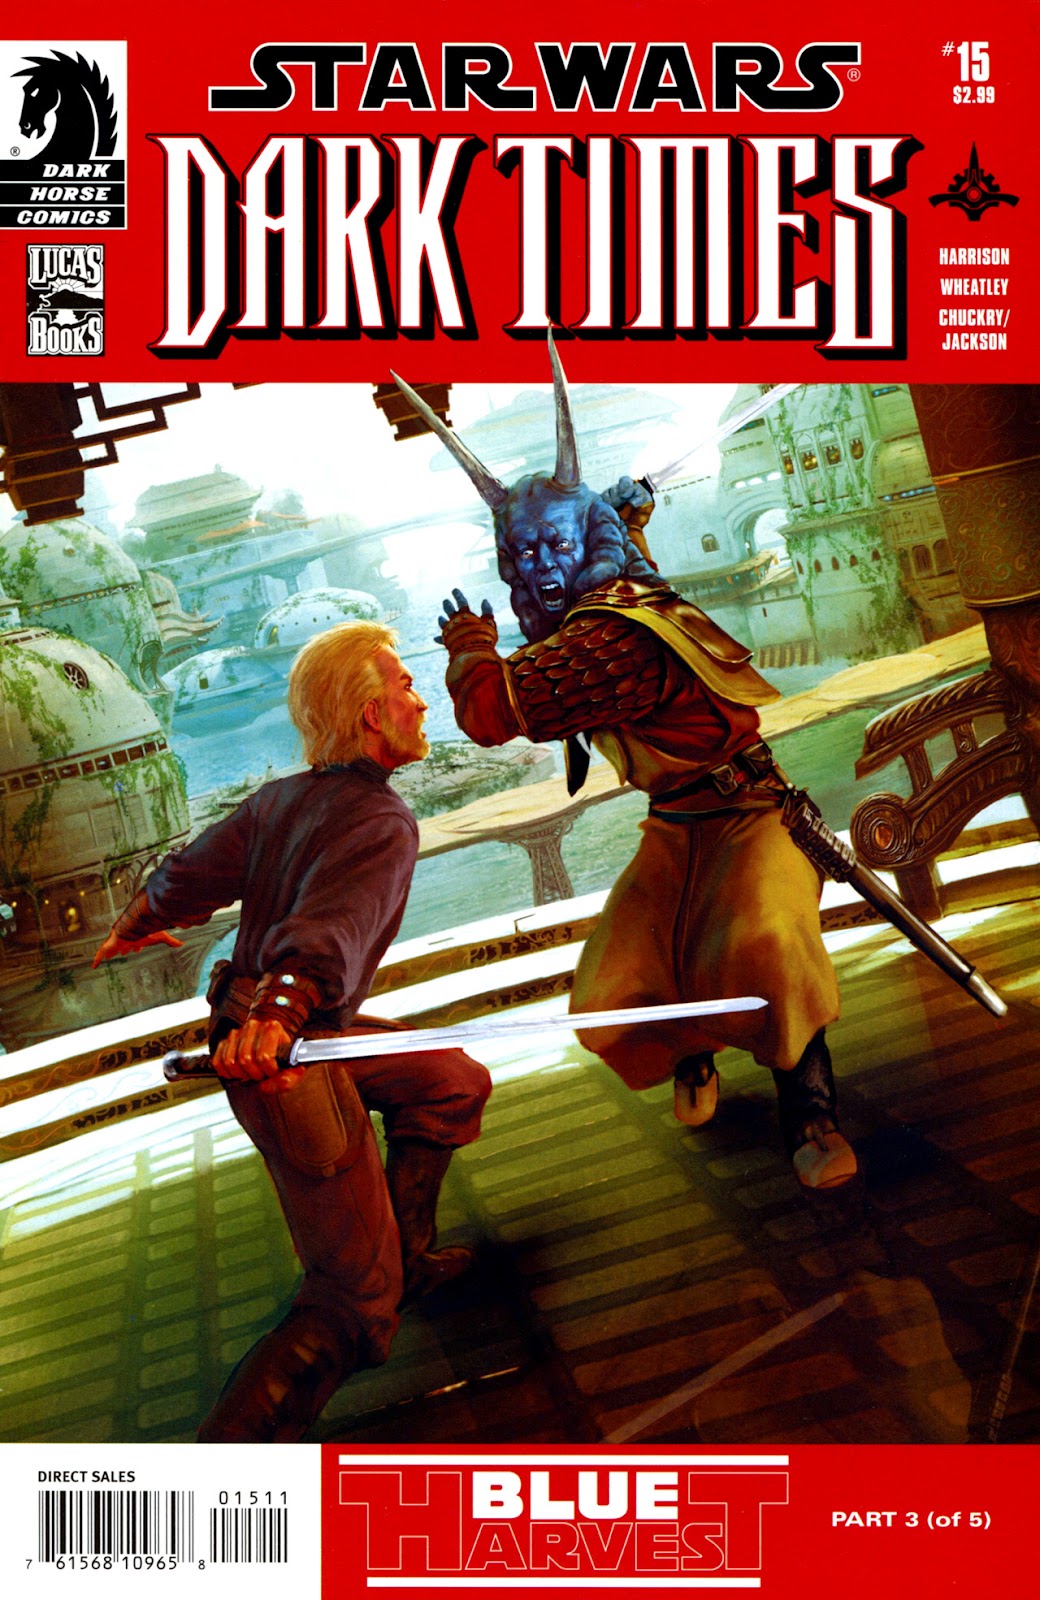 Star Wars: Dark Times 15 - Blue Harvest, Part 3 Page 1